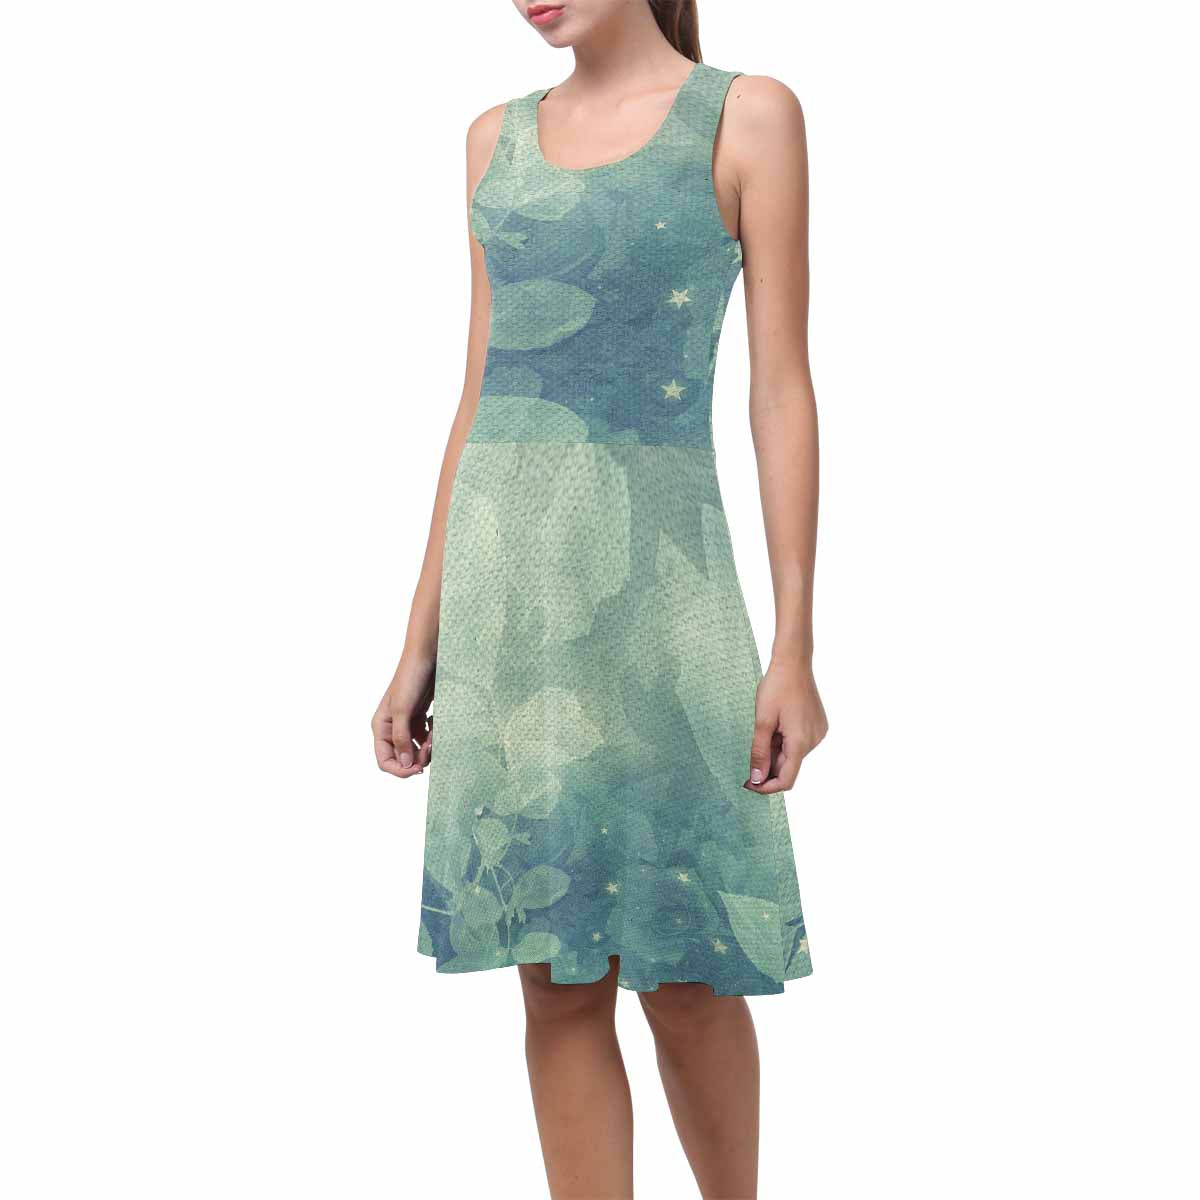 Antique General summer dress, MODEL 09534, design 53